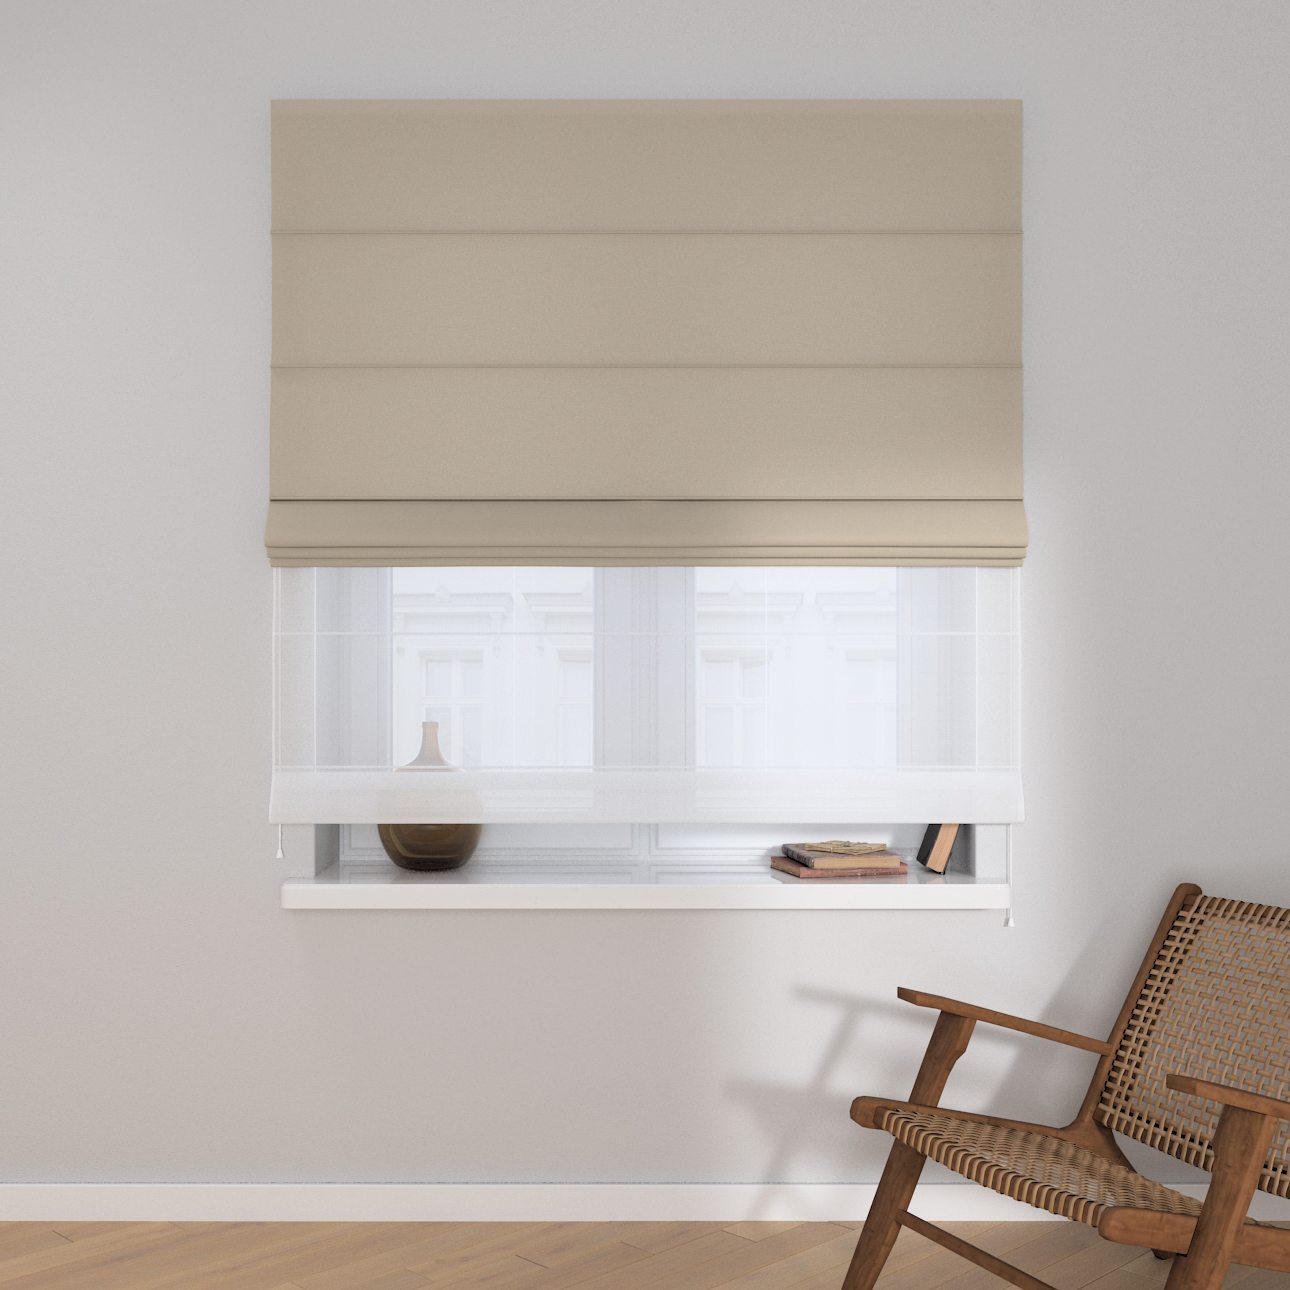 Dekoria Doppelraffrollo Duo, grau-beige, 50 x 60 cm günstig online kaufen